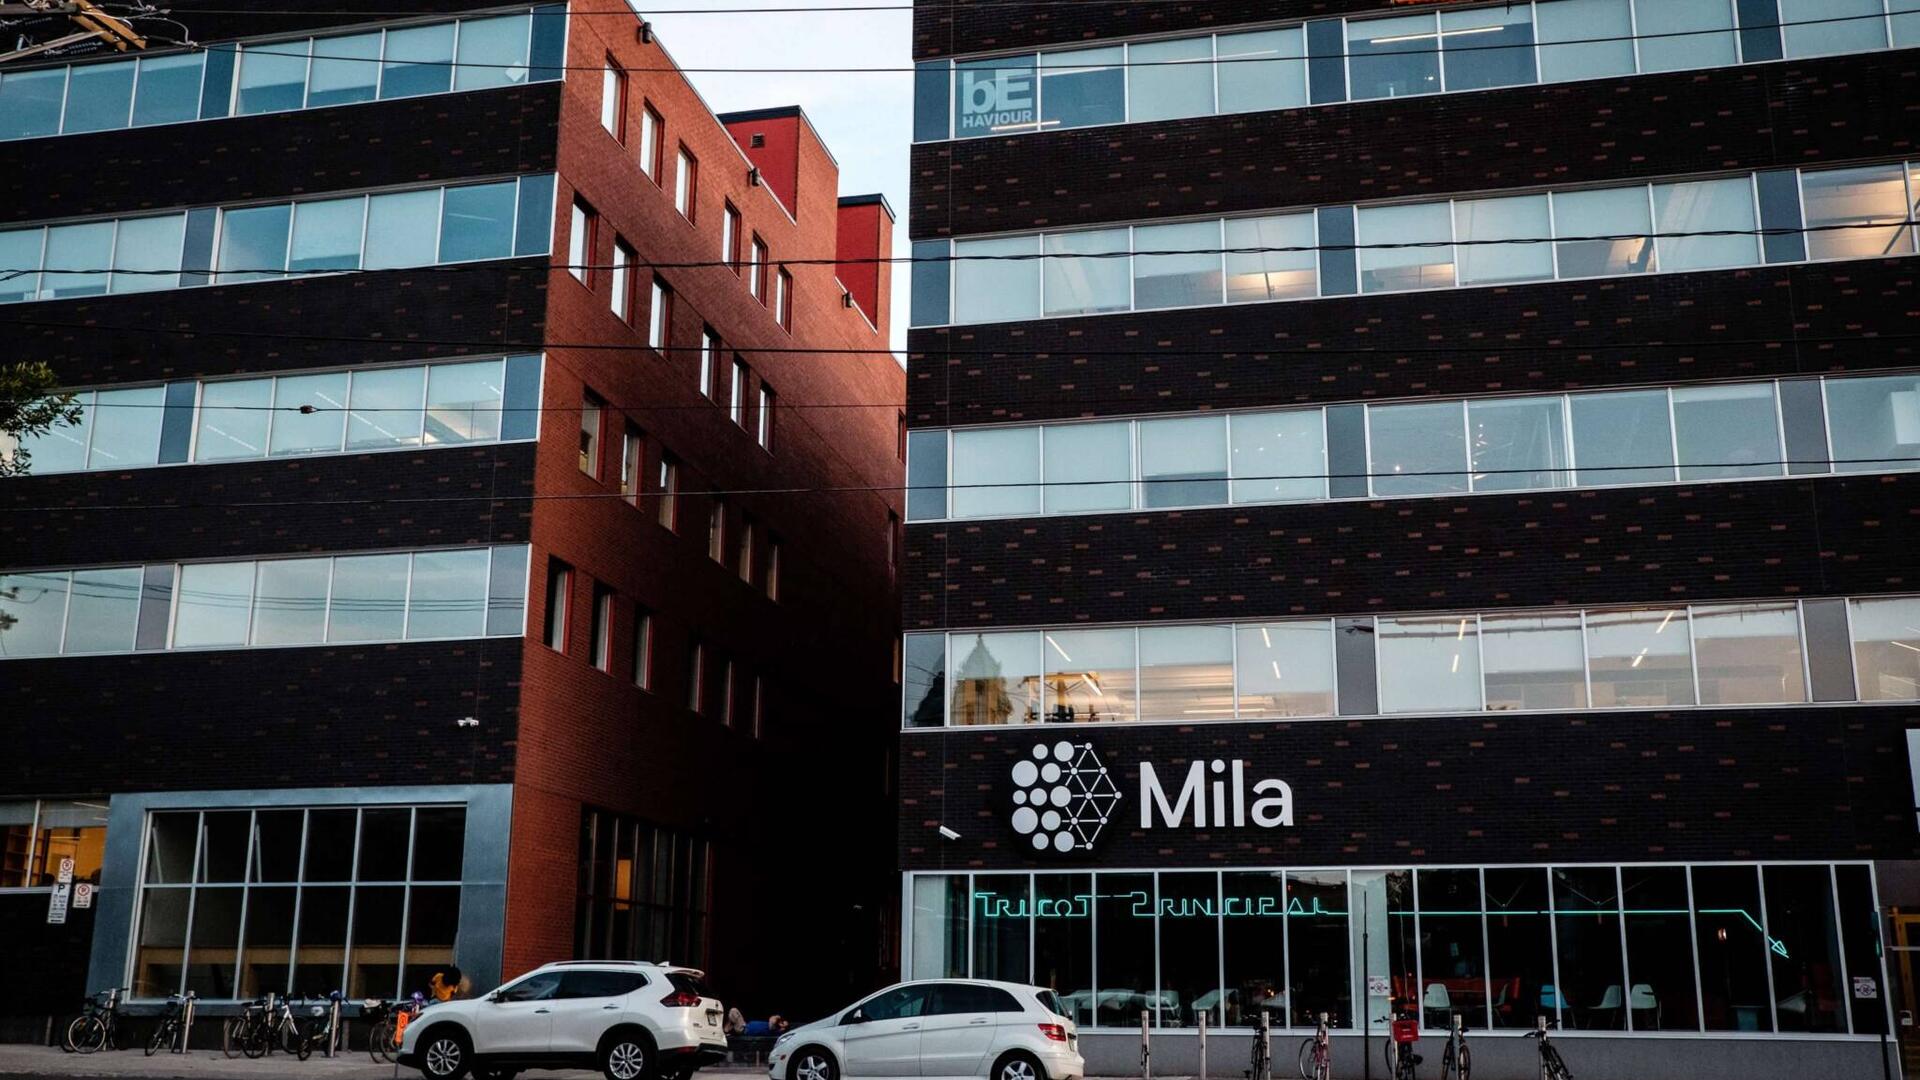 View of the Mila façade. 